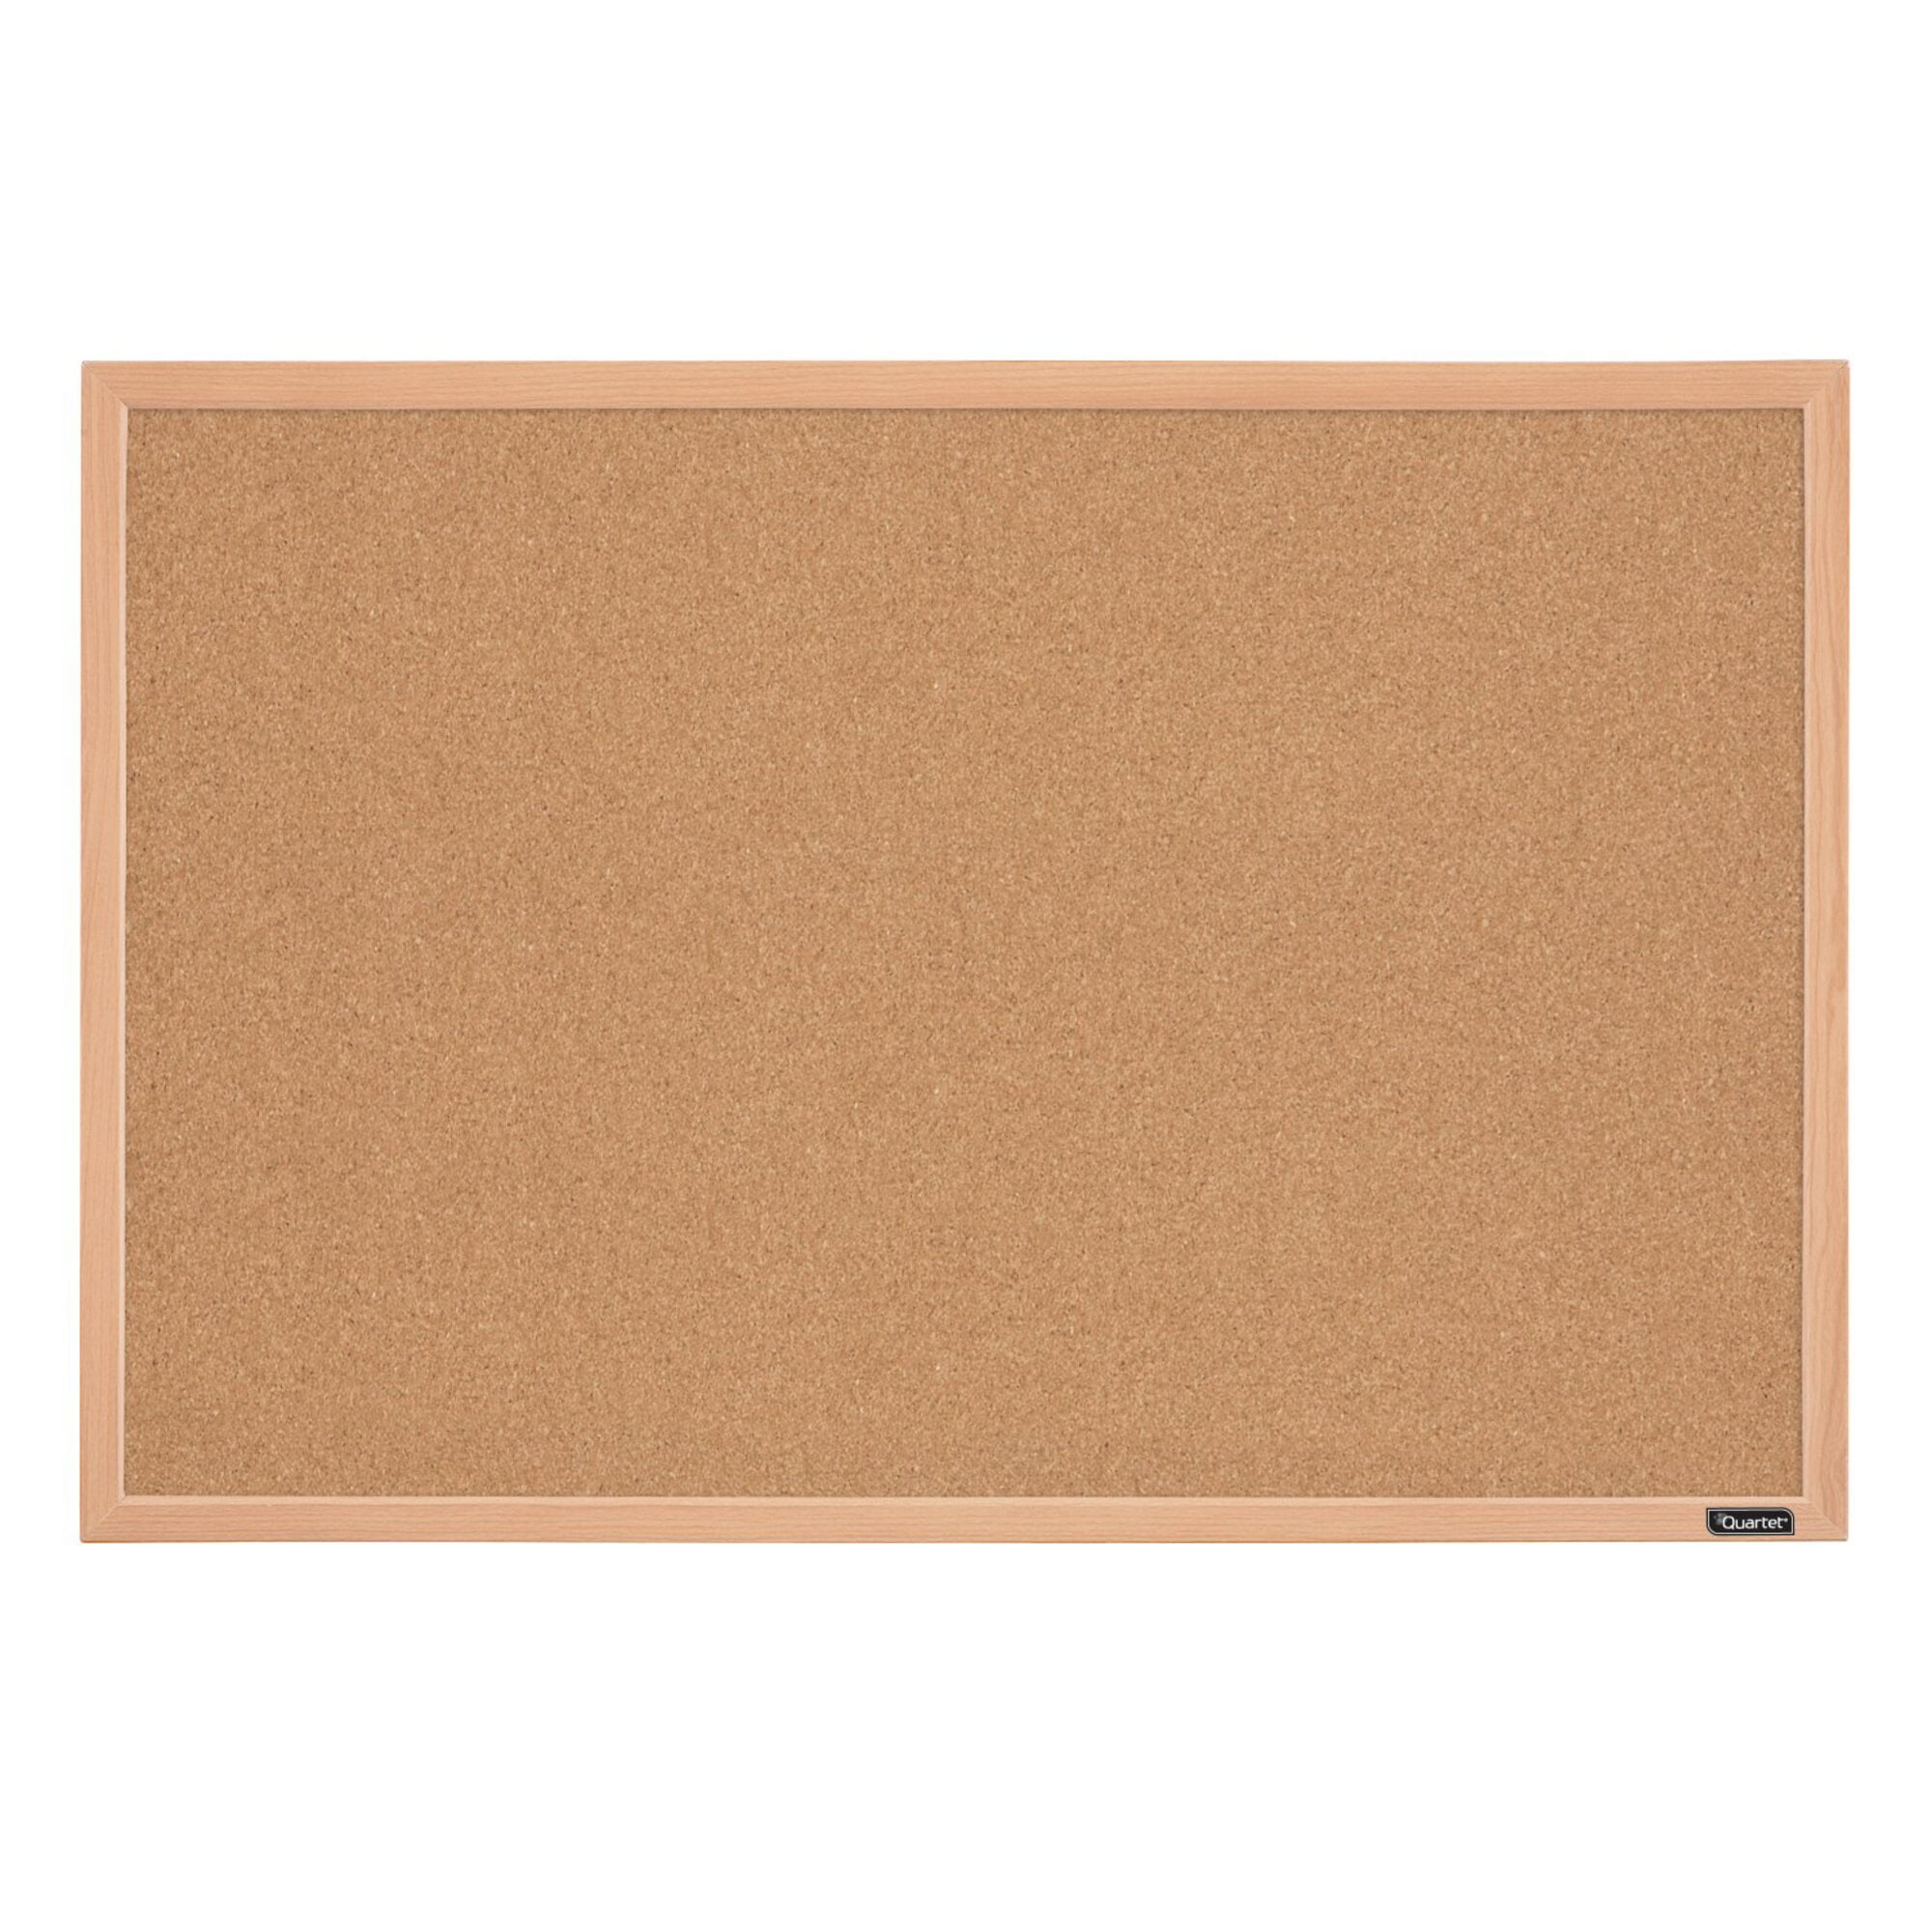 Quartet Cork Board Corkboard Oak Finish Frame 23" x 35" Bulletin Board 